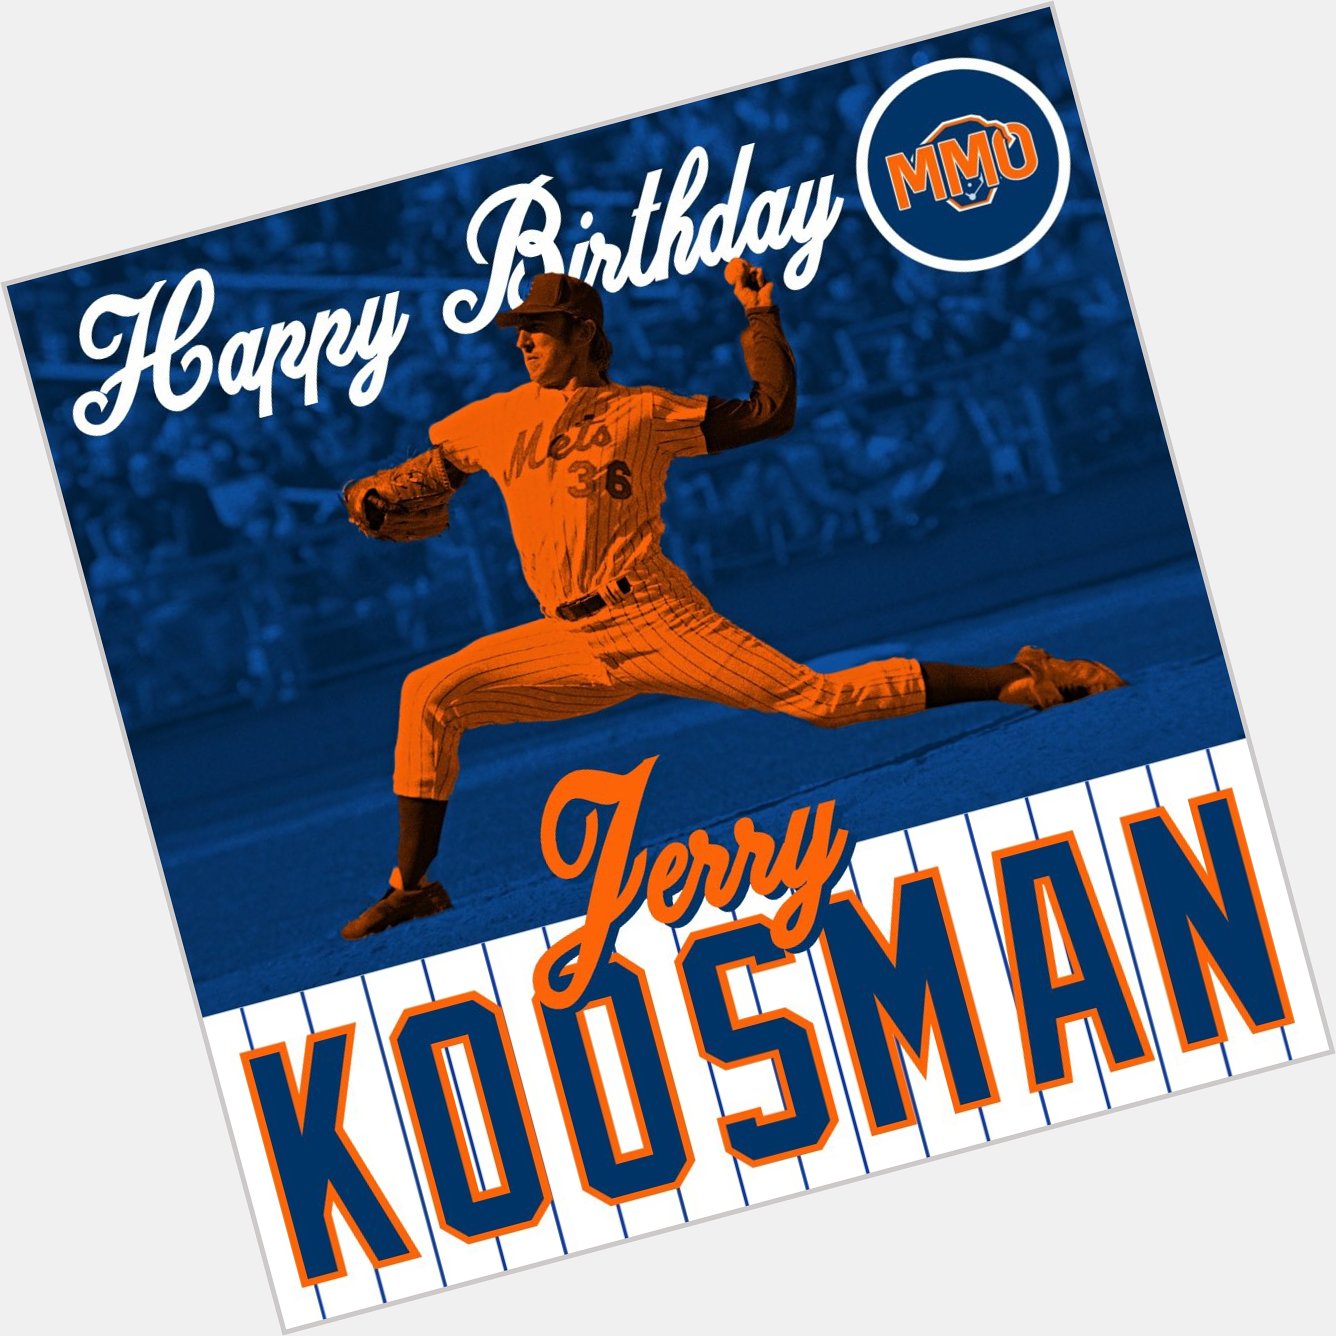 Happy birthday to a sensational southpaw, Jerry Koosman!  